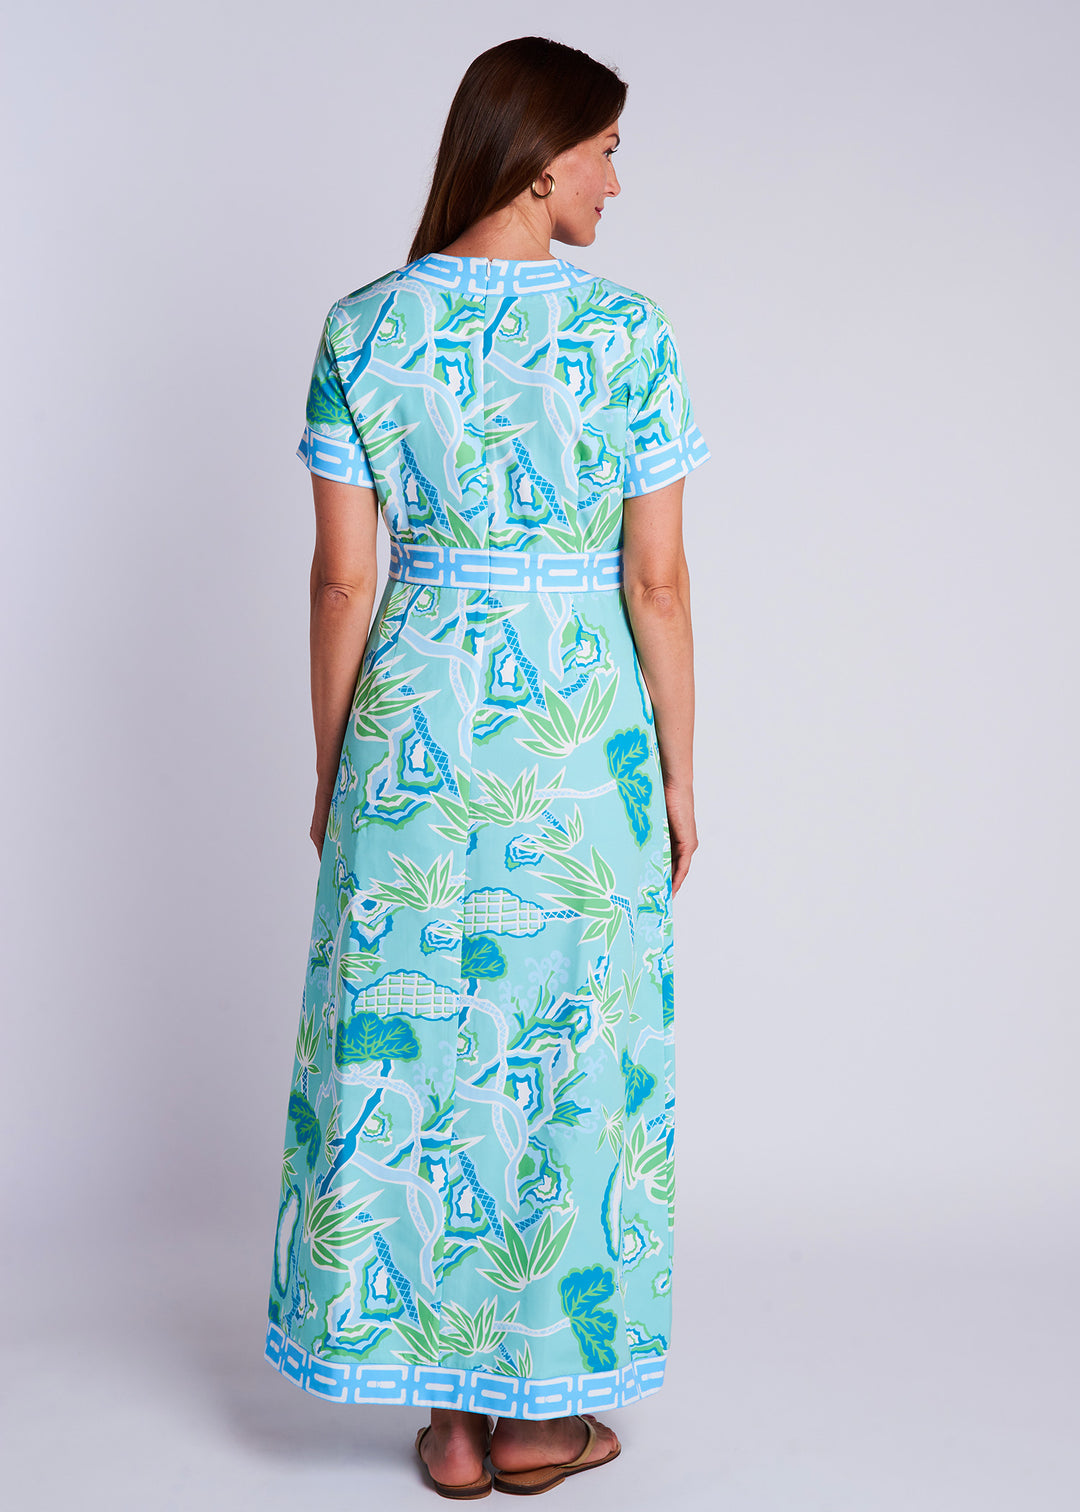 CK Bradley Leland Dress | Winifred Seafoam